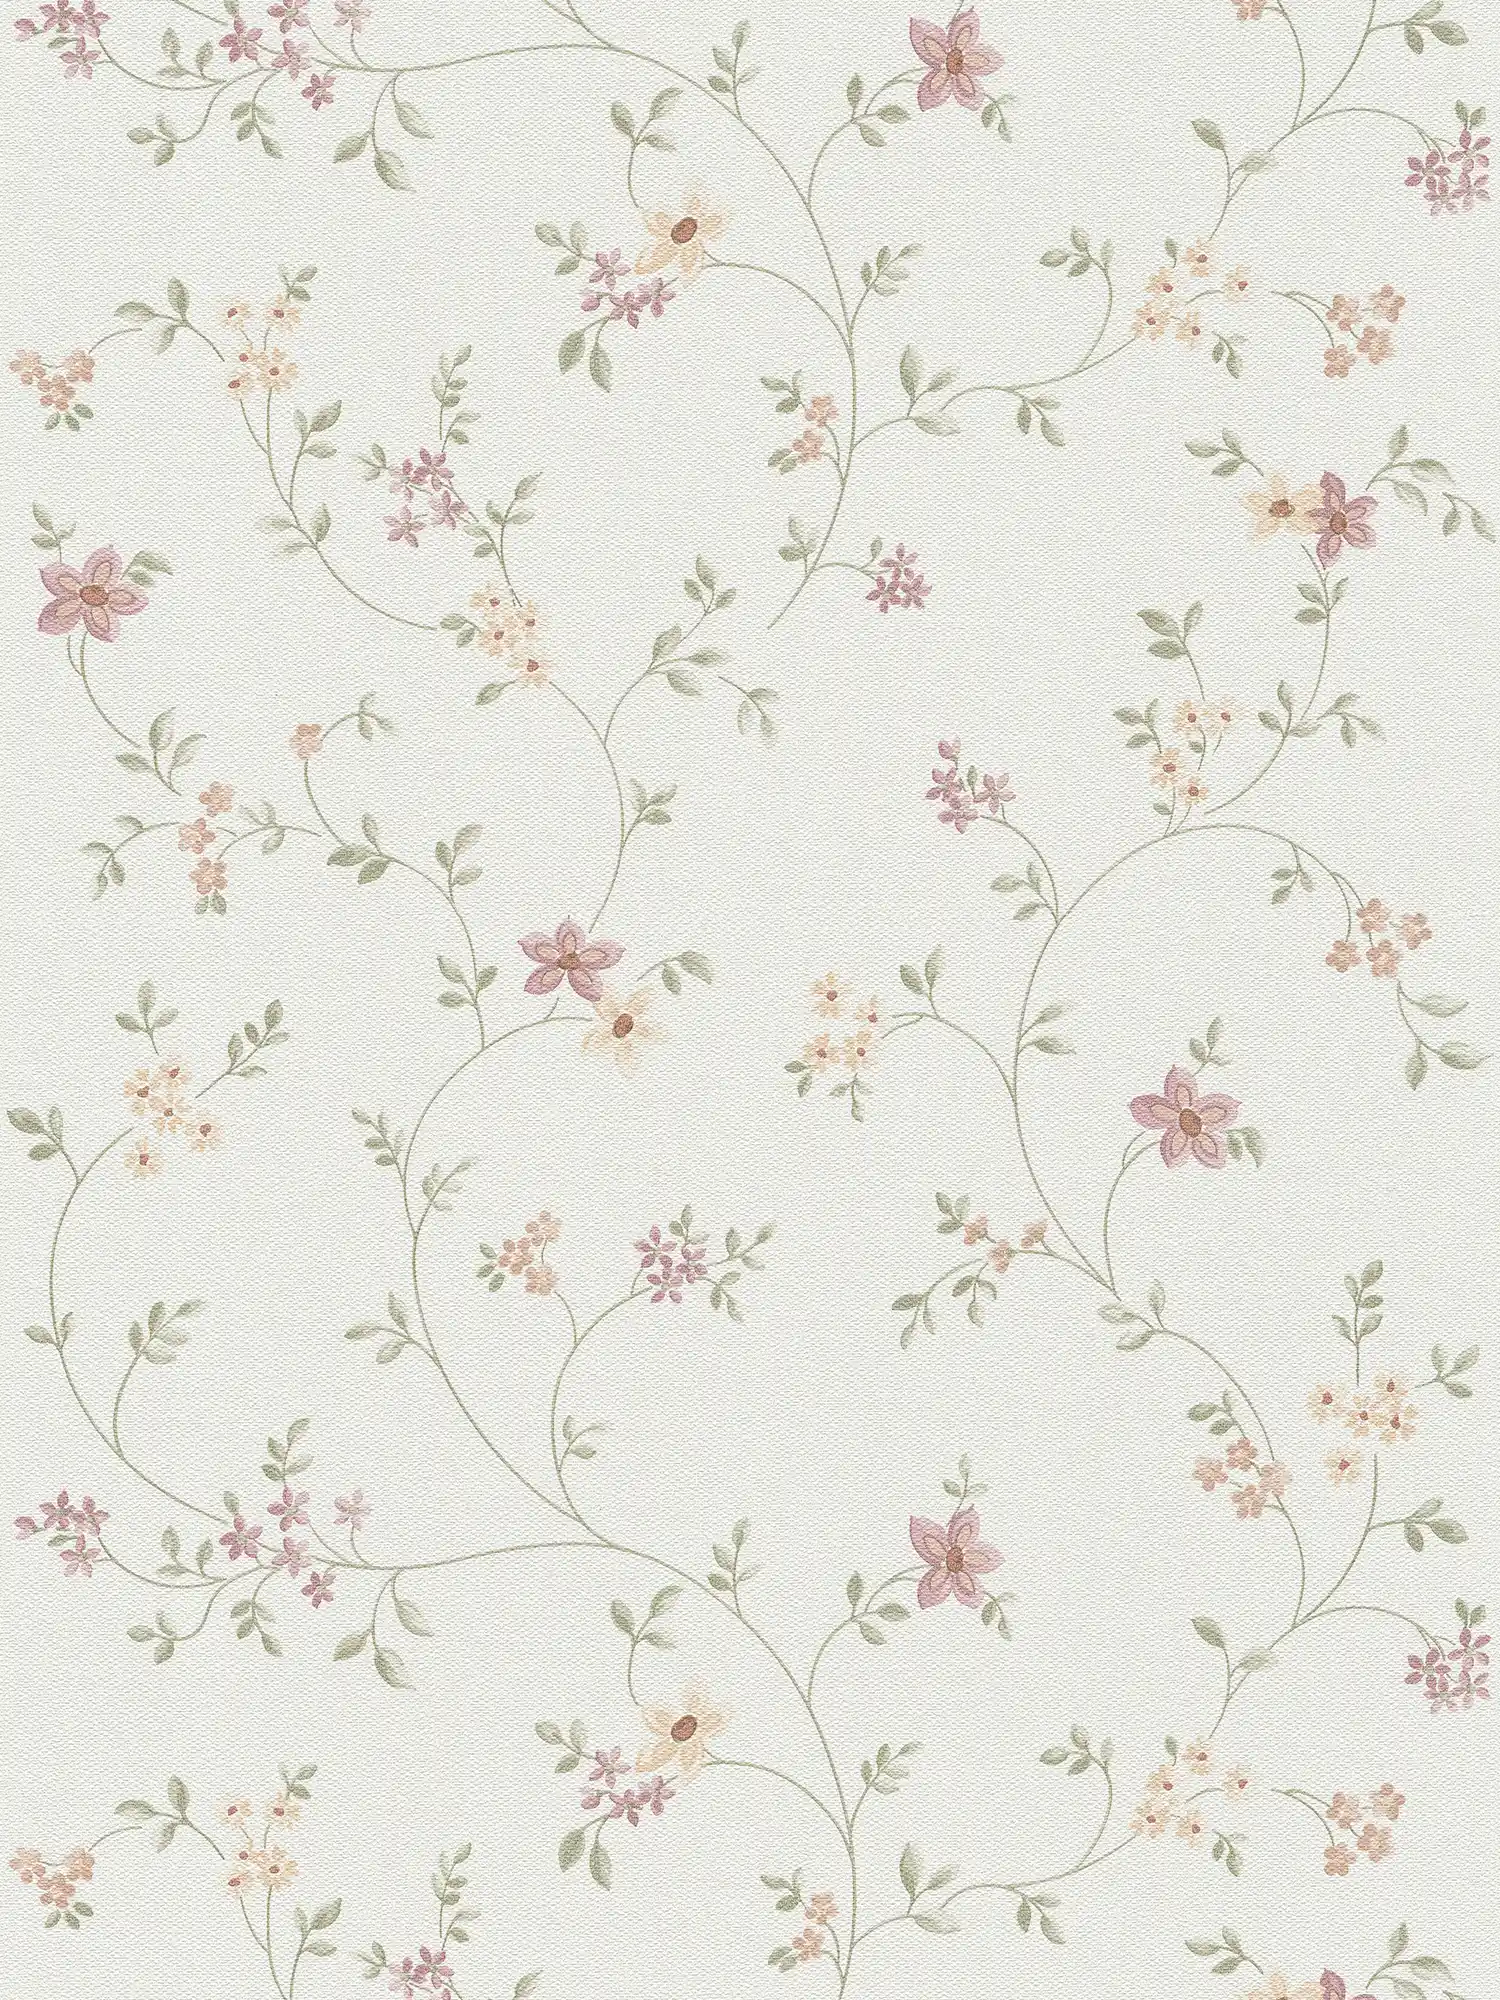         Tapete mit Blüten Muster im Landhaus Stil – Bunt, Grün, Weiß
    